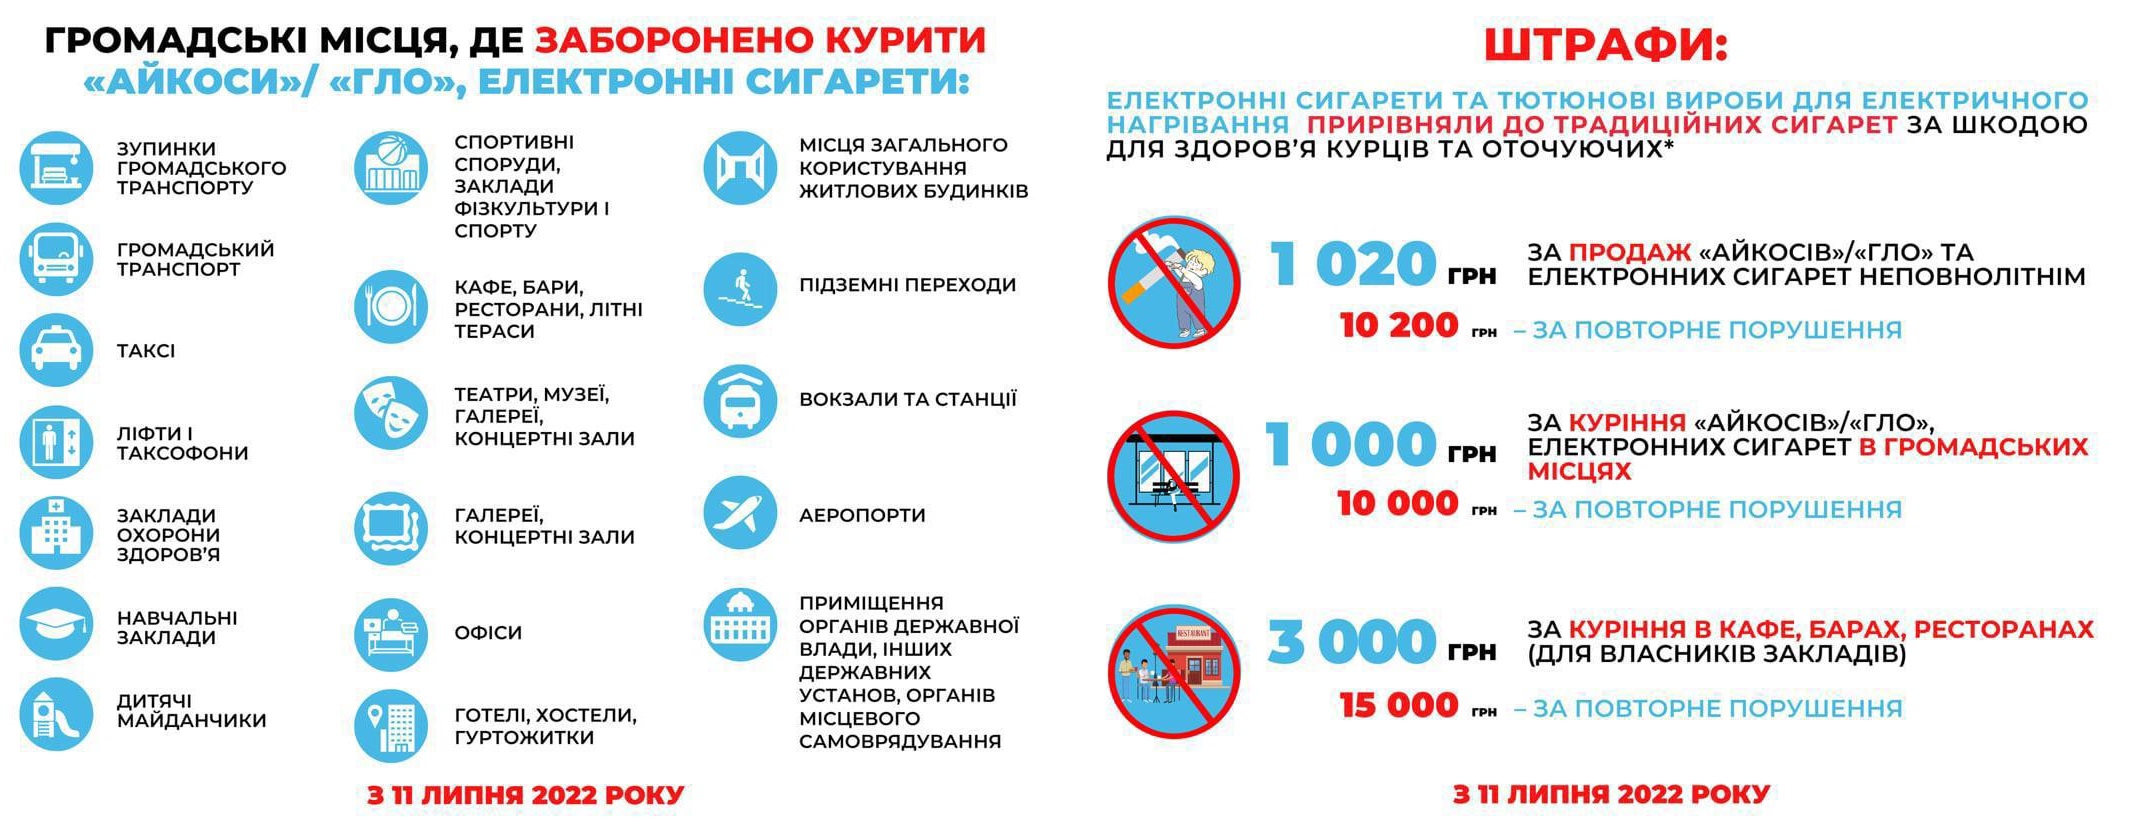 В Україні забороняють курити електронні сигарети у громадських місцях